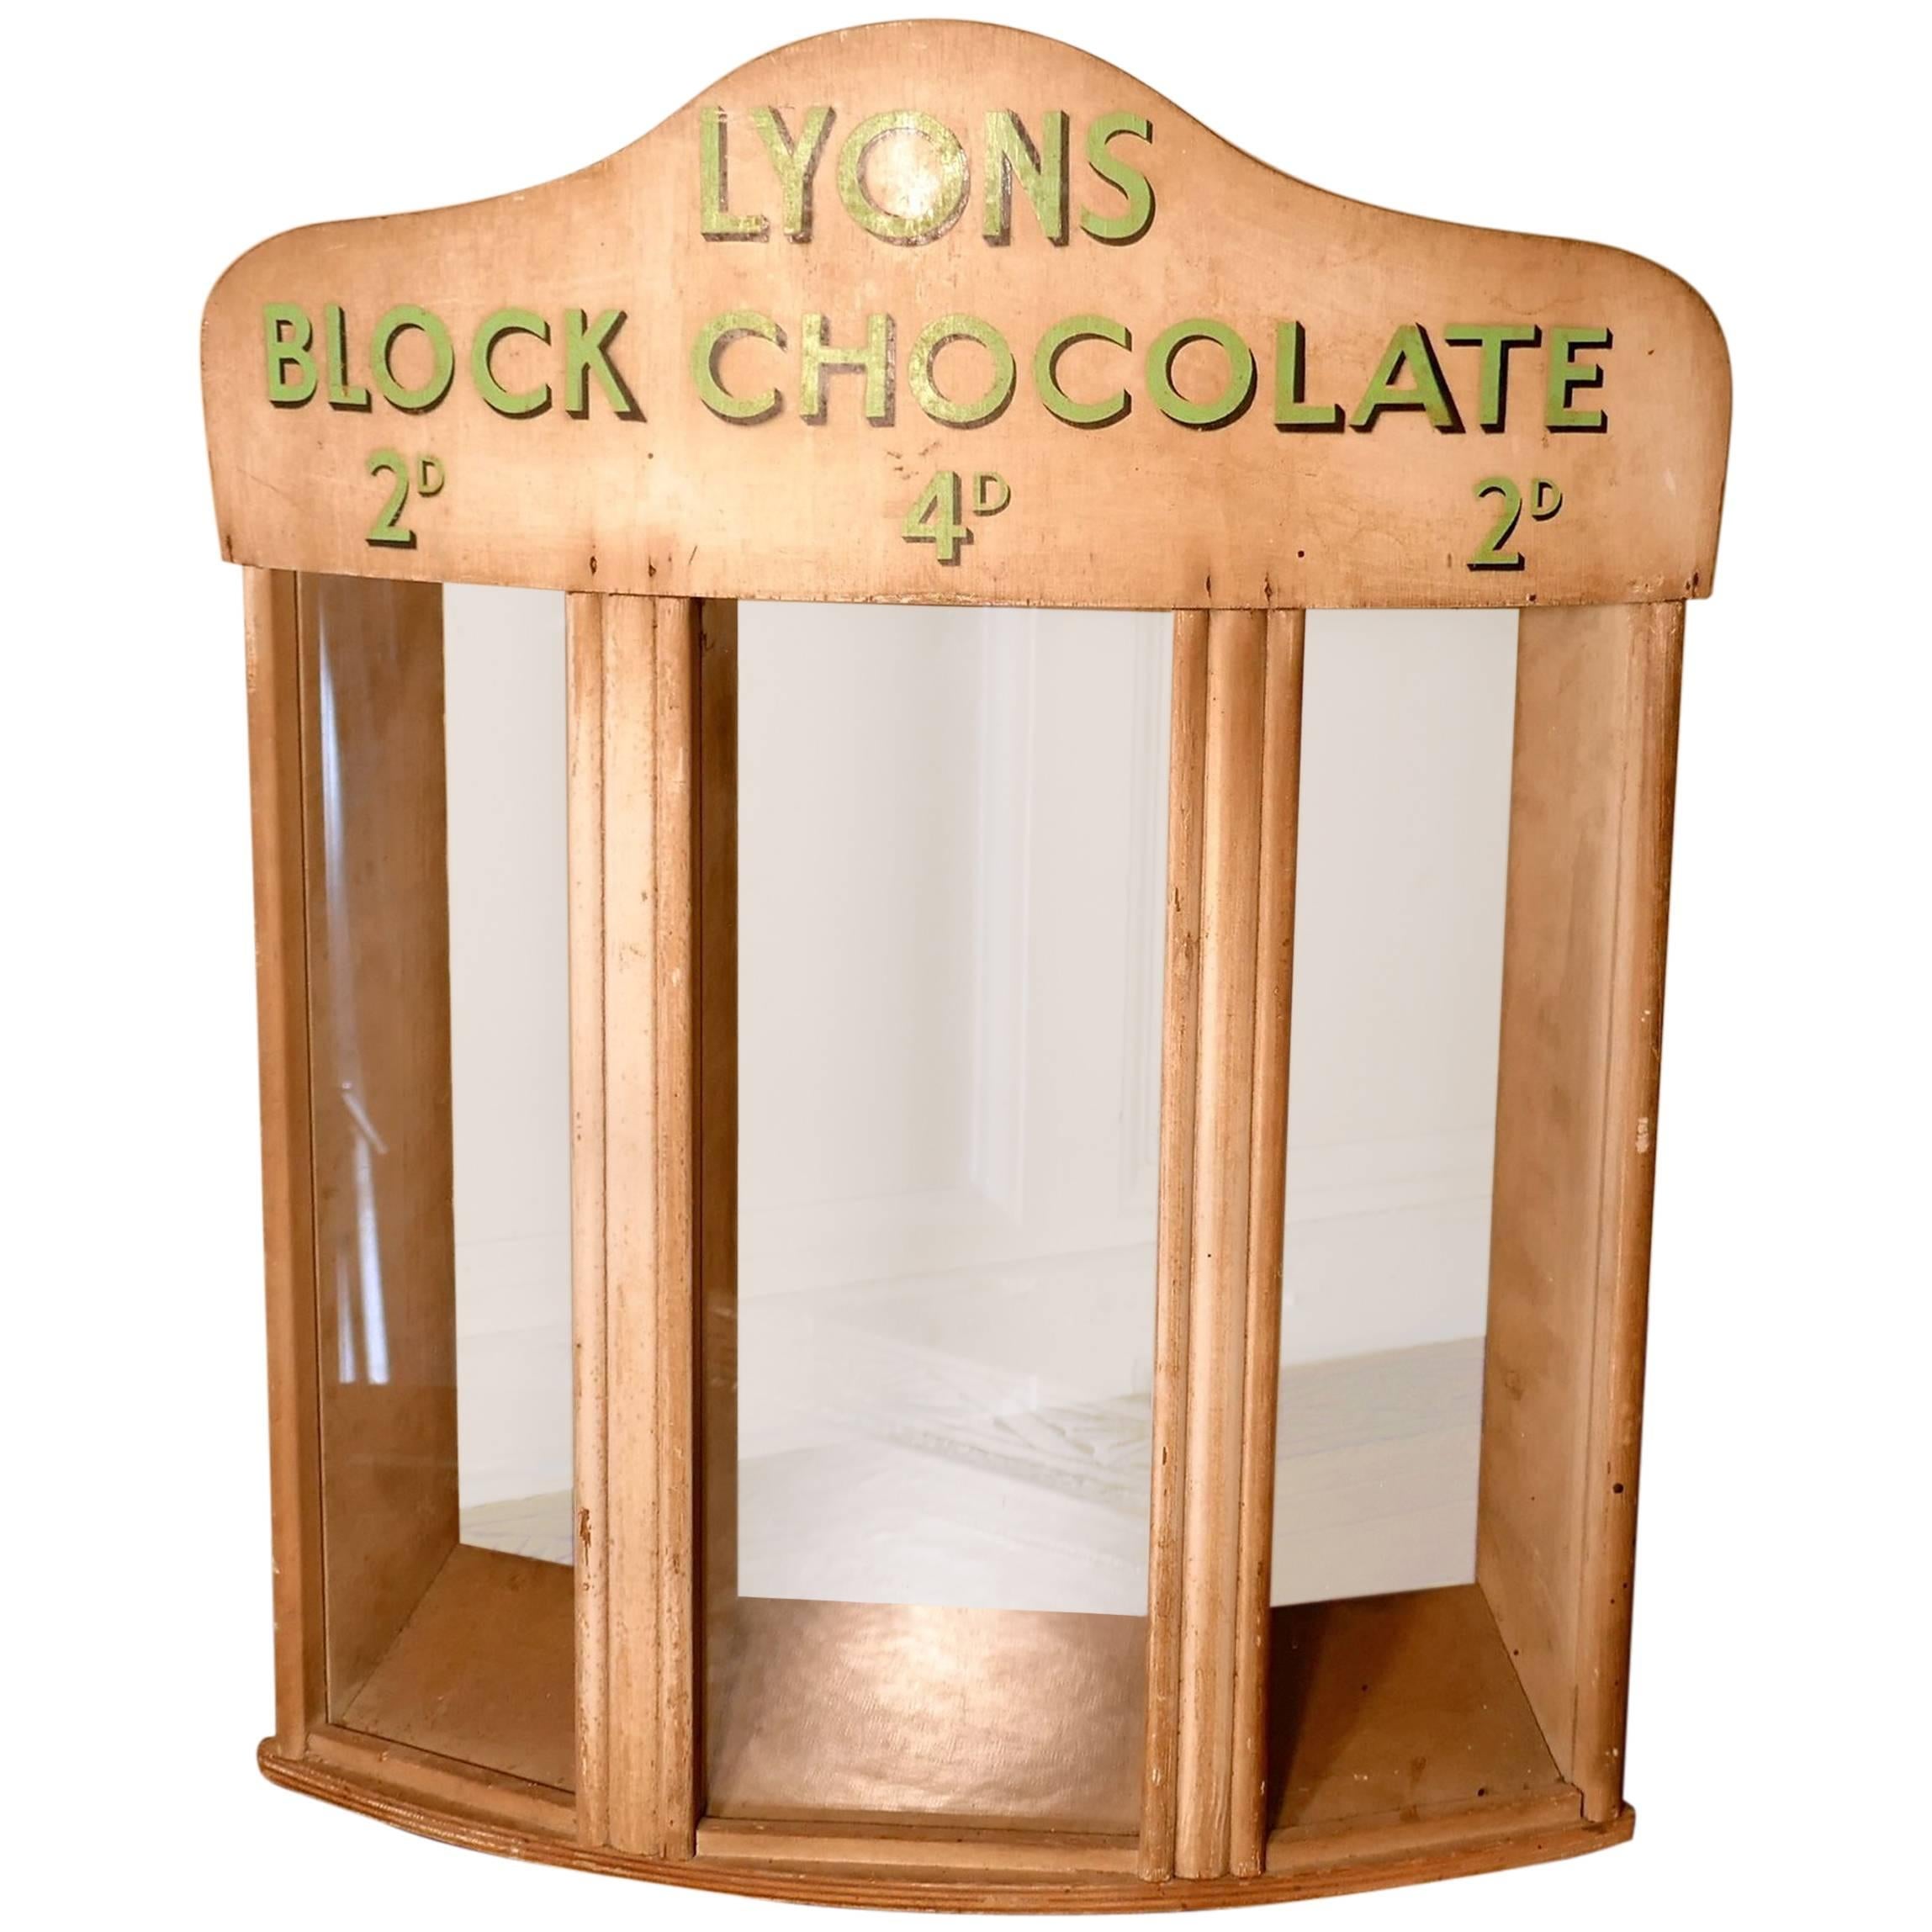 Armoire à distribuer les chocolats Lyons Block